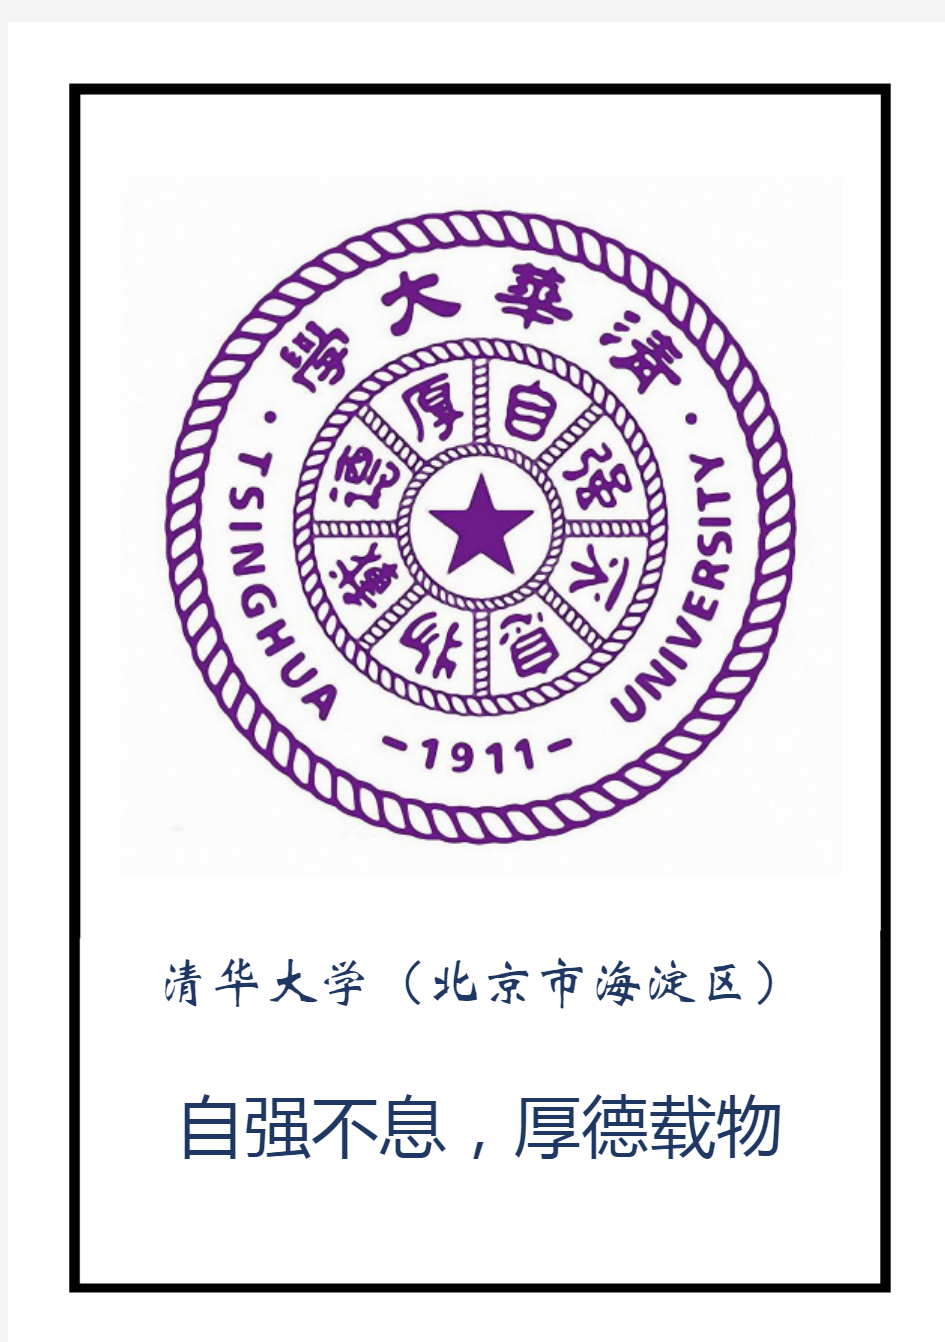 中国985高校校徽校训集锦(高清大图无水印)